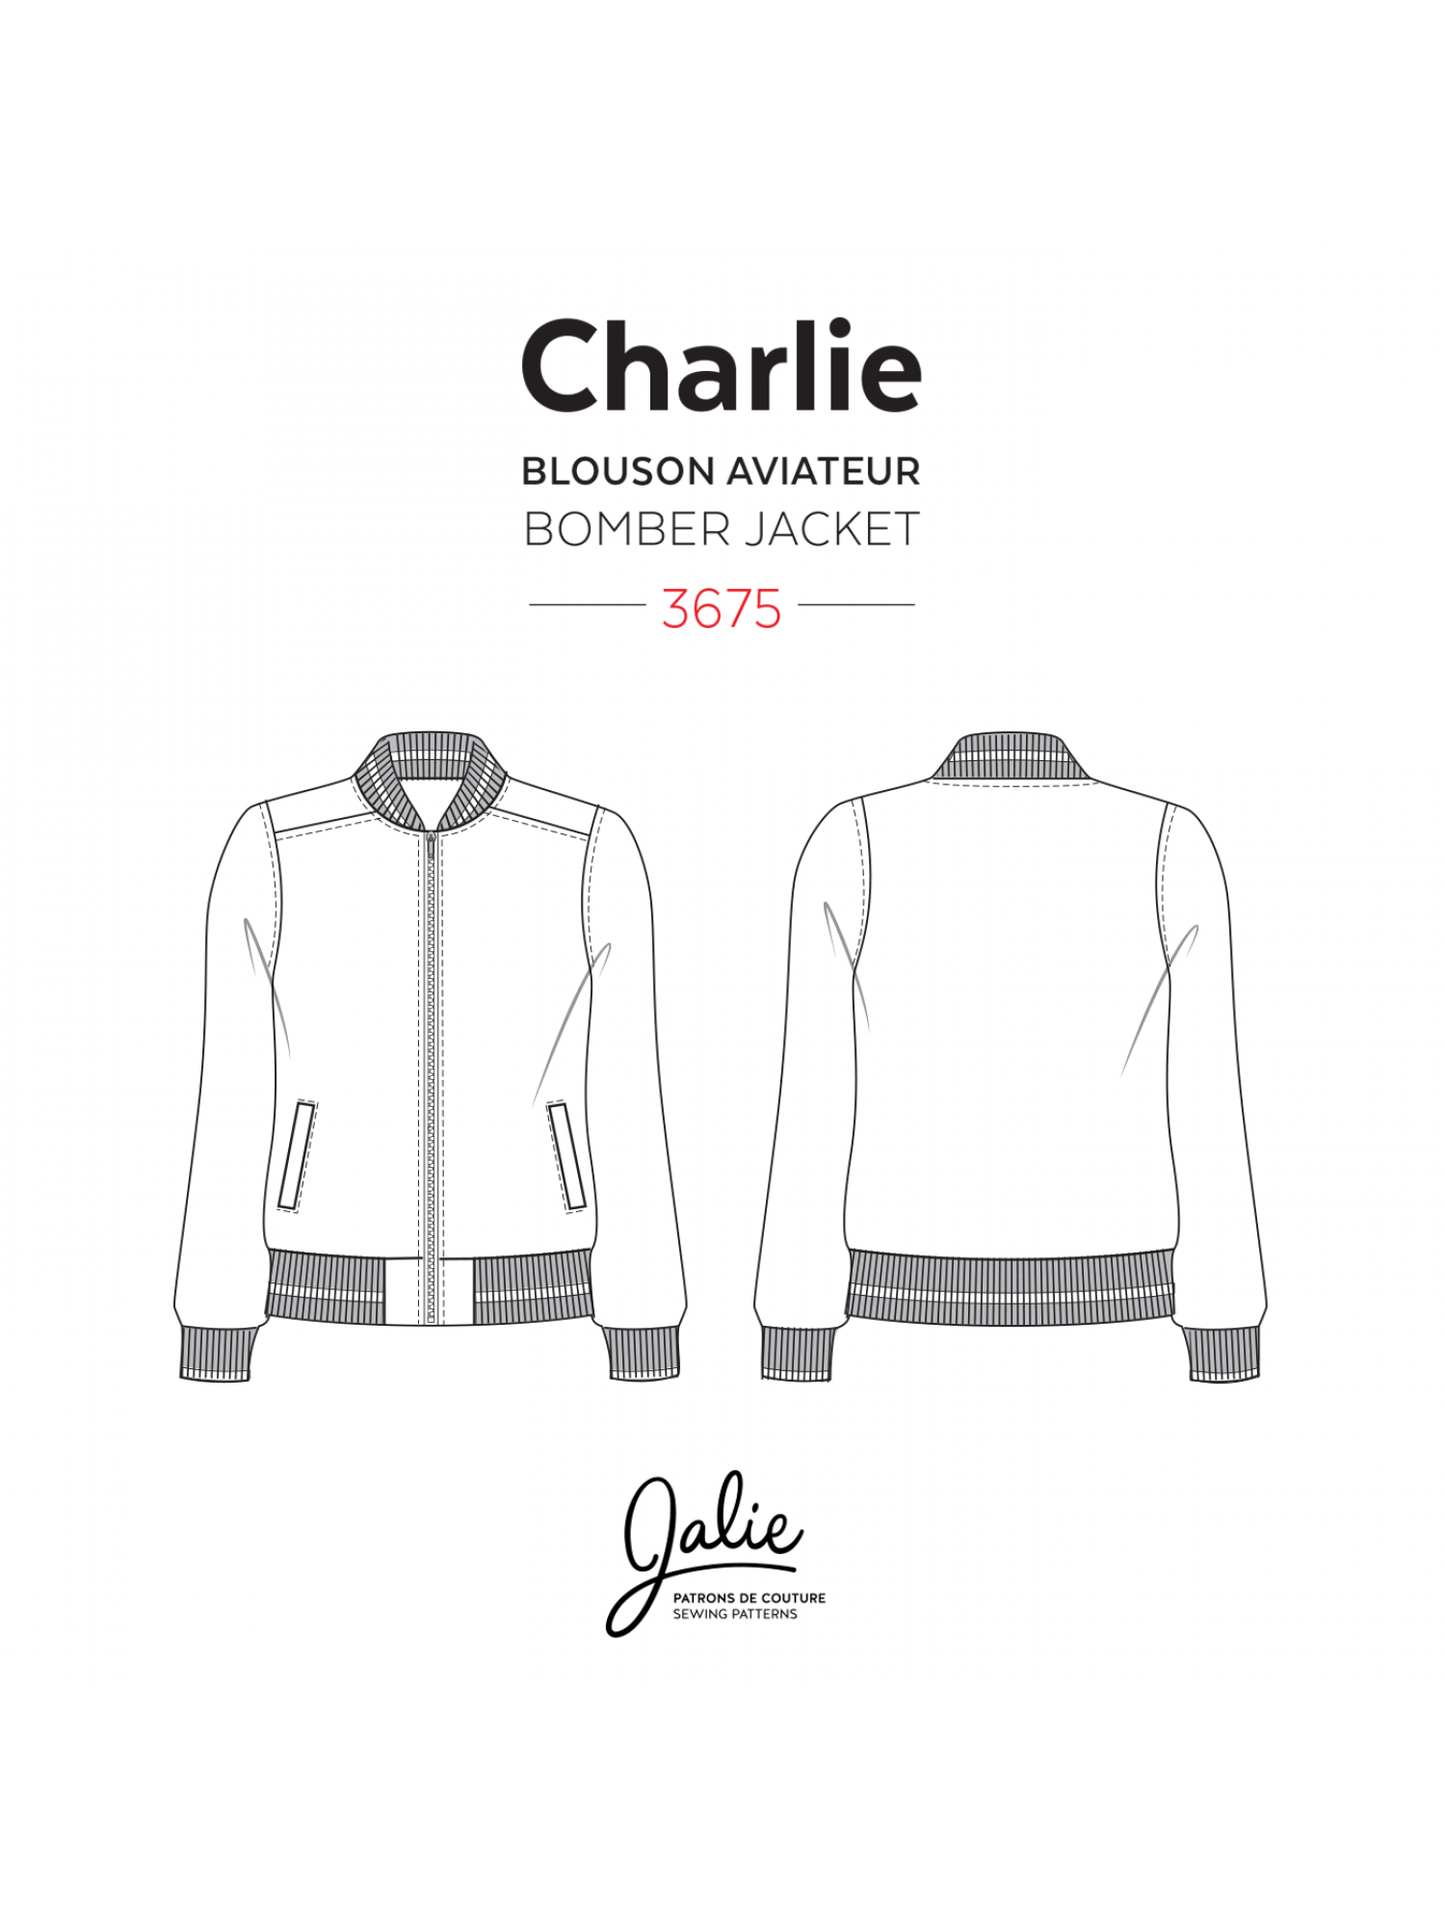 Jalie - 3675 - CHARLIE Bomber Jacket